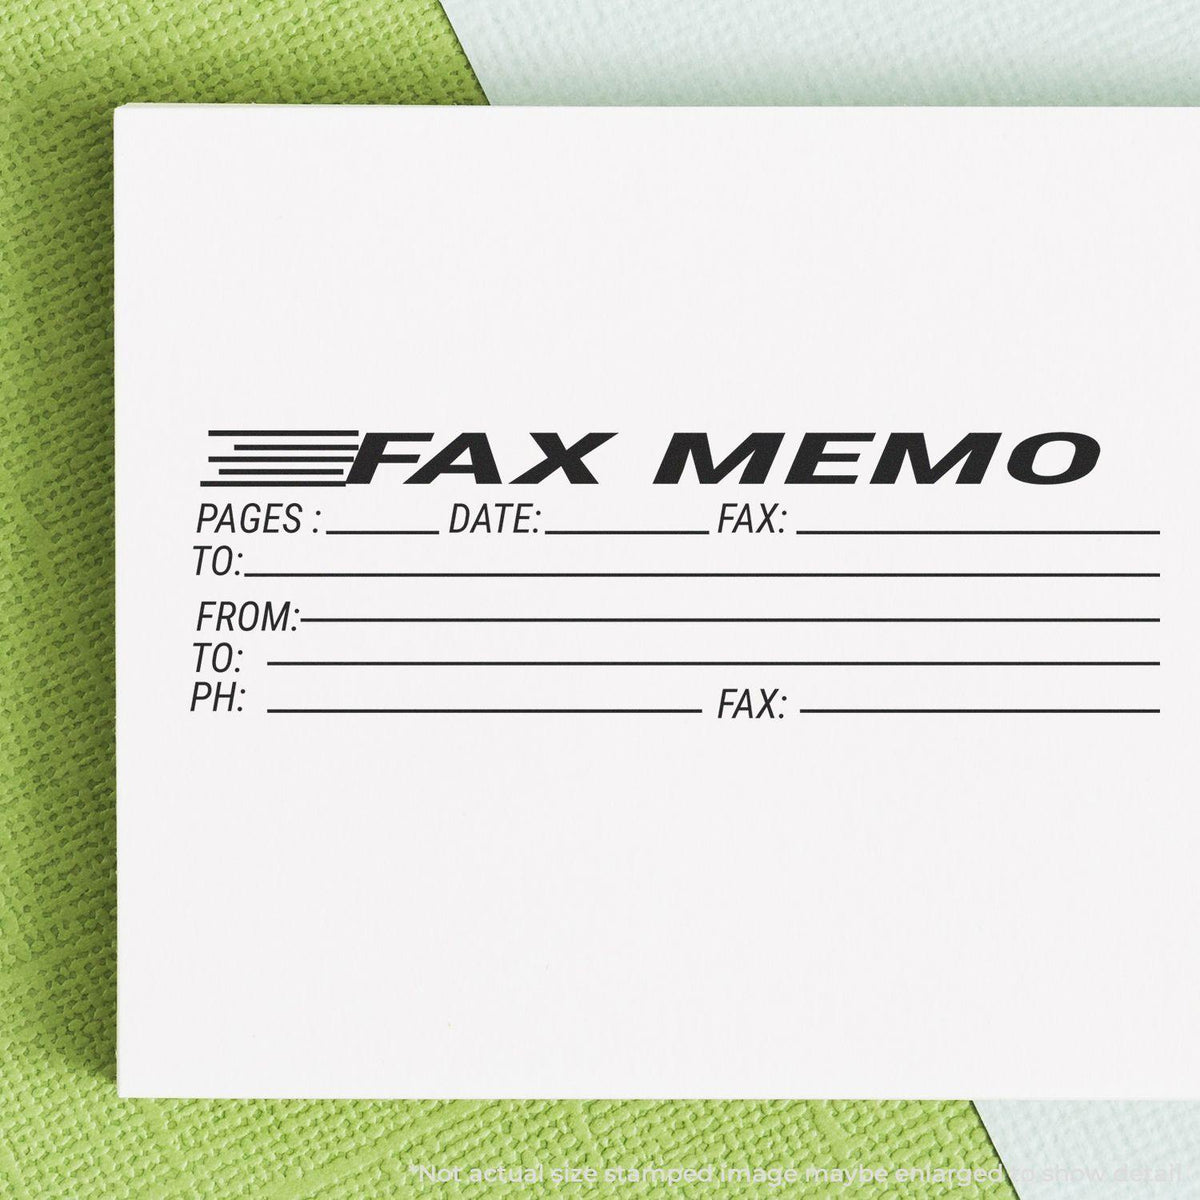 In Use Slim Pre-Inked Fax Memo Stamp Image